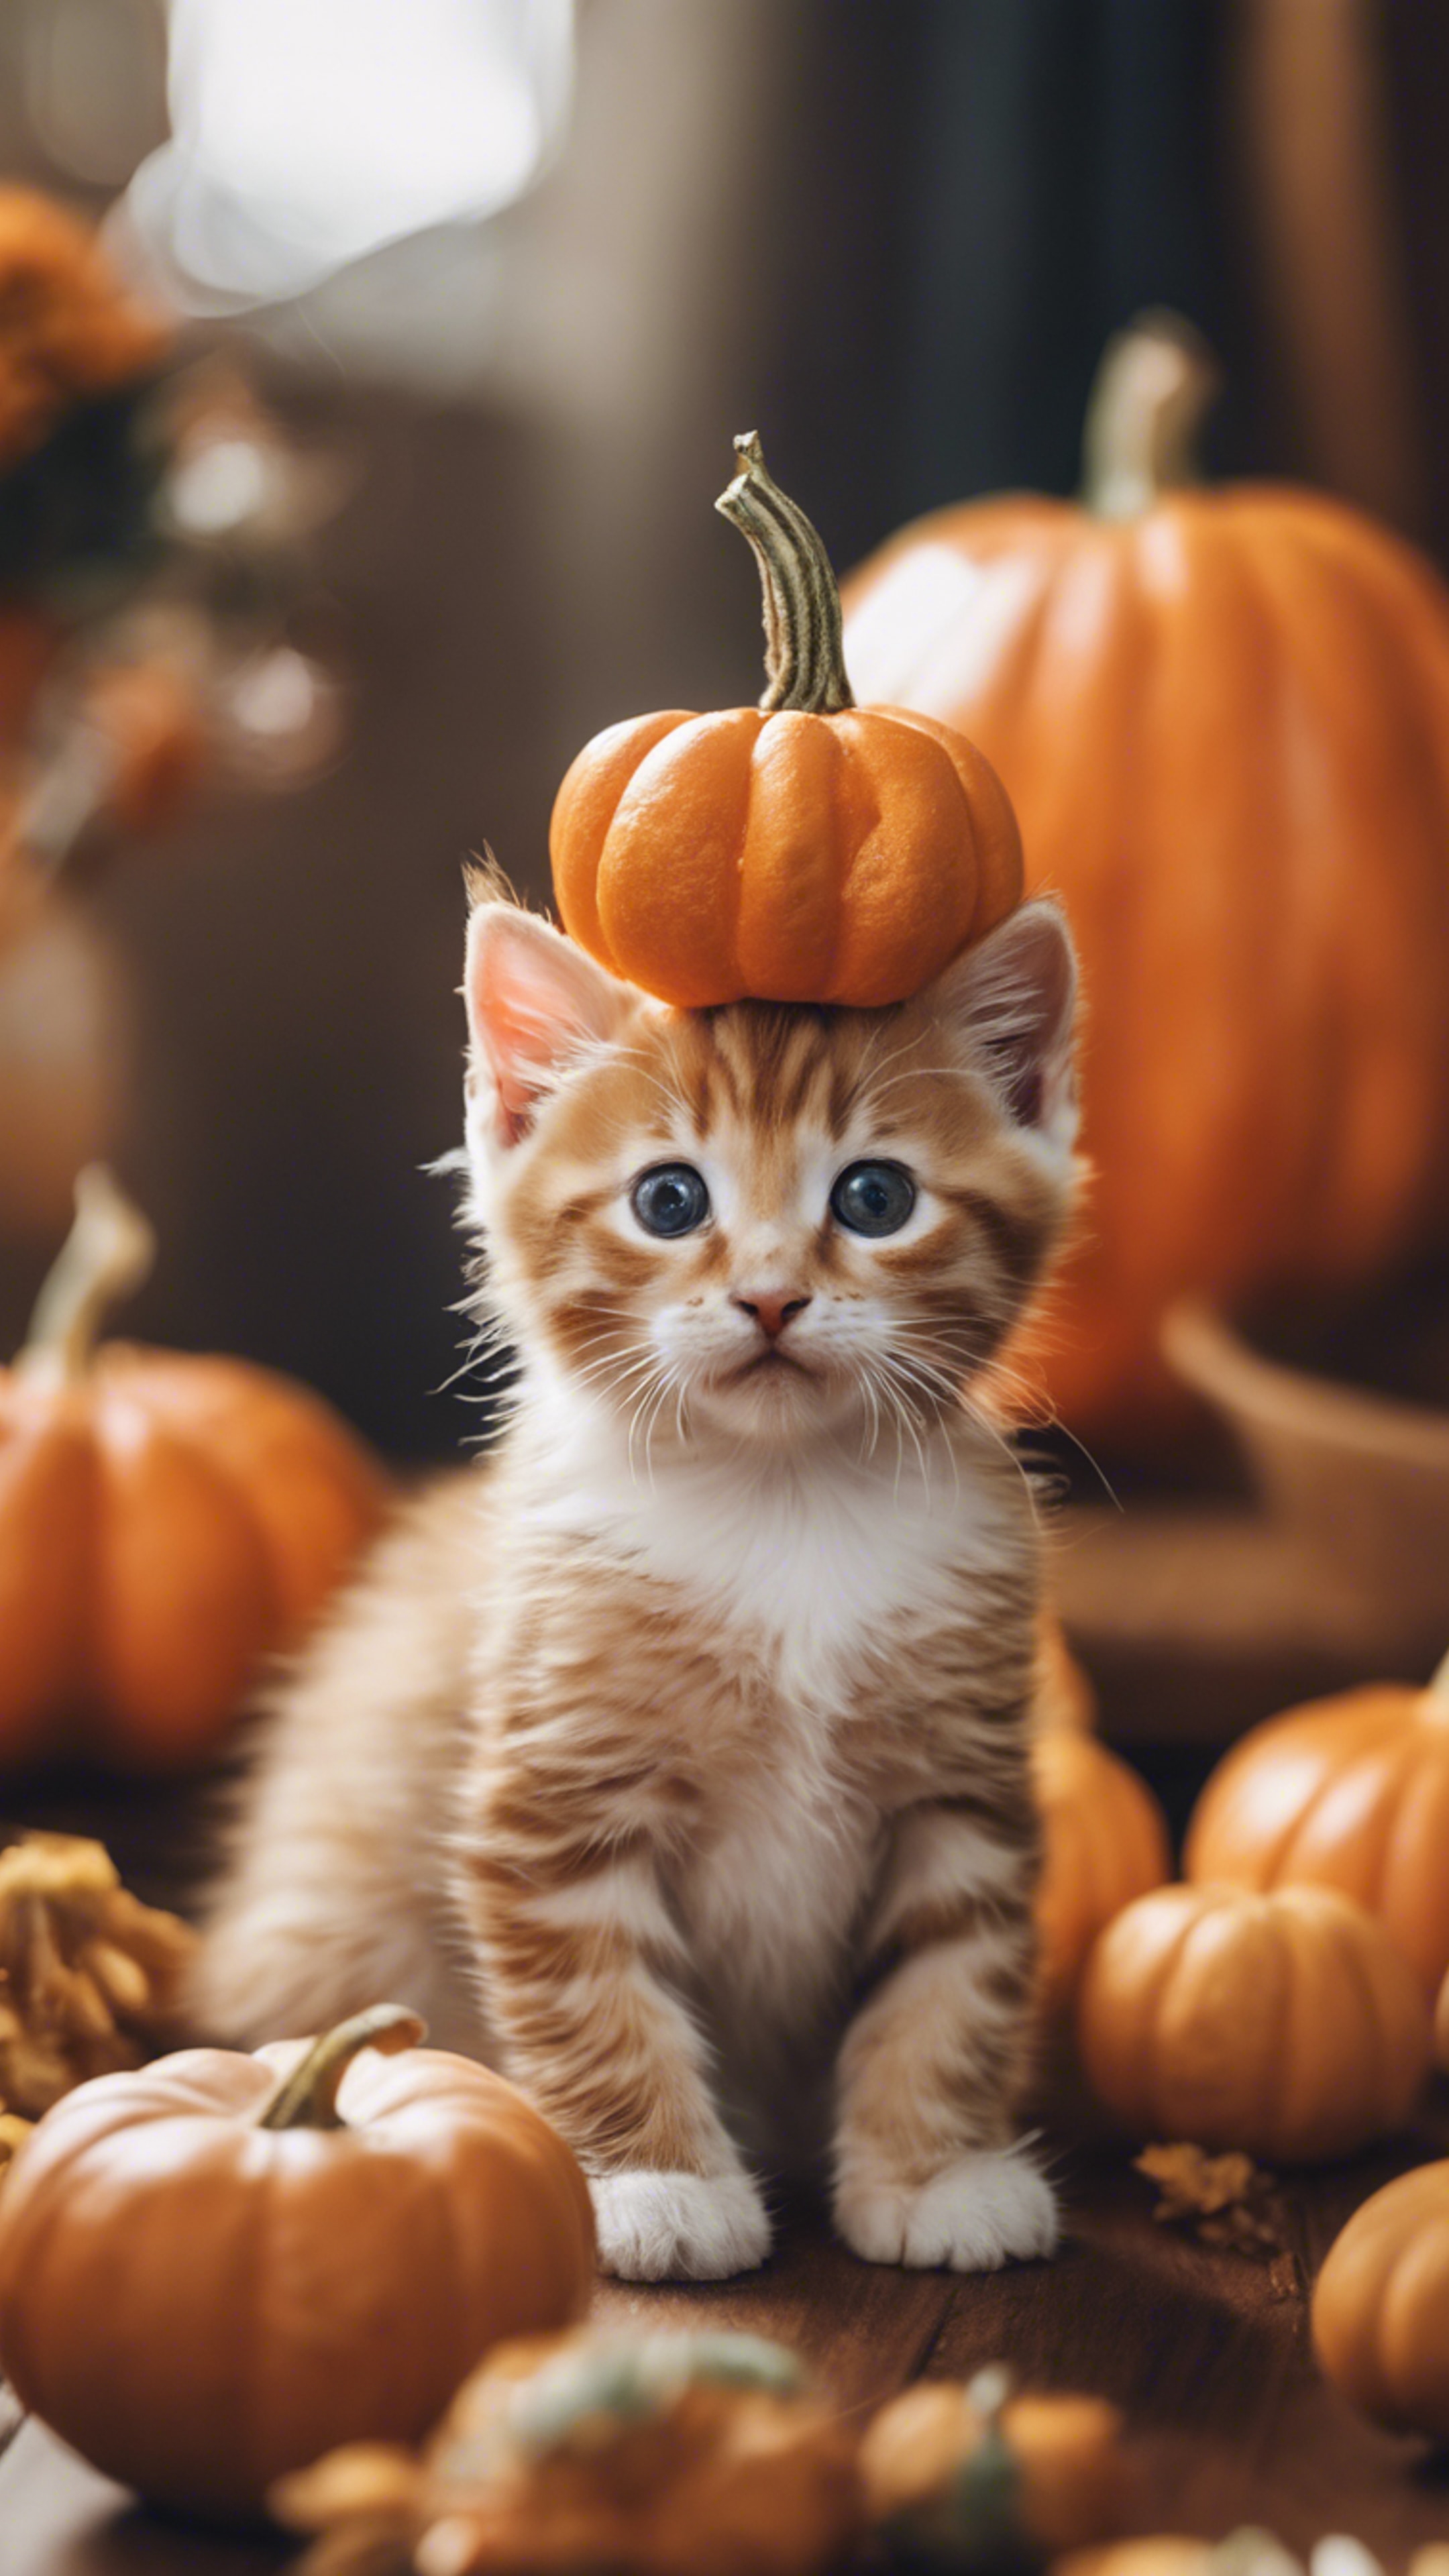 An orange tabby kitten dressed up as a tiny pumpkin for Halloween festivities. Tapeta[a5205dadd28d41bcbdef]